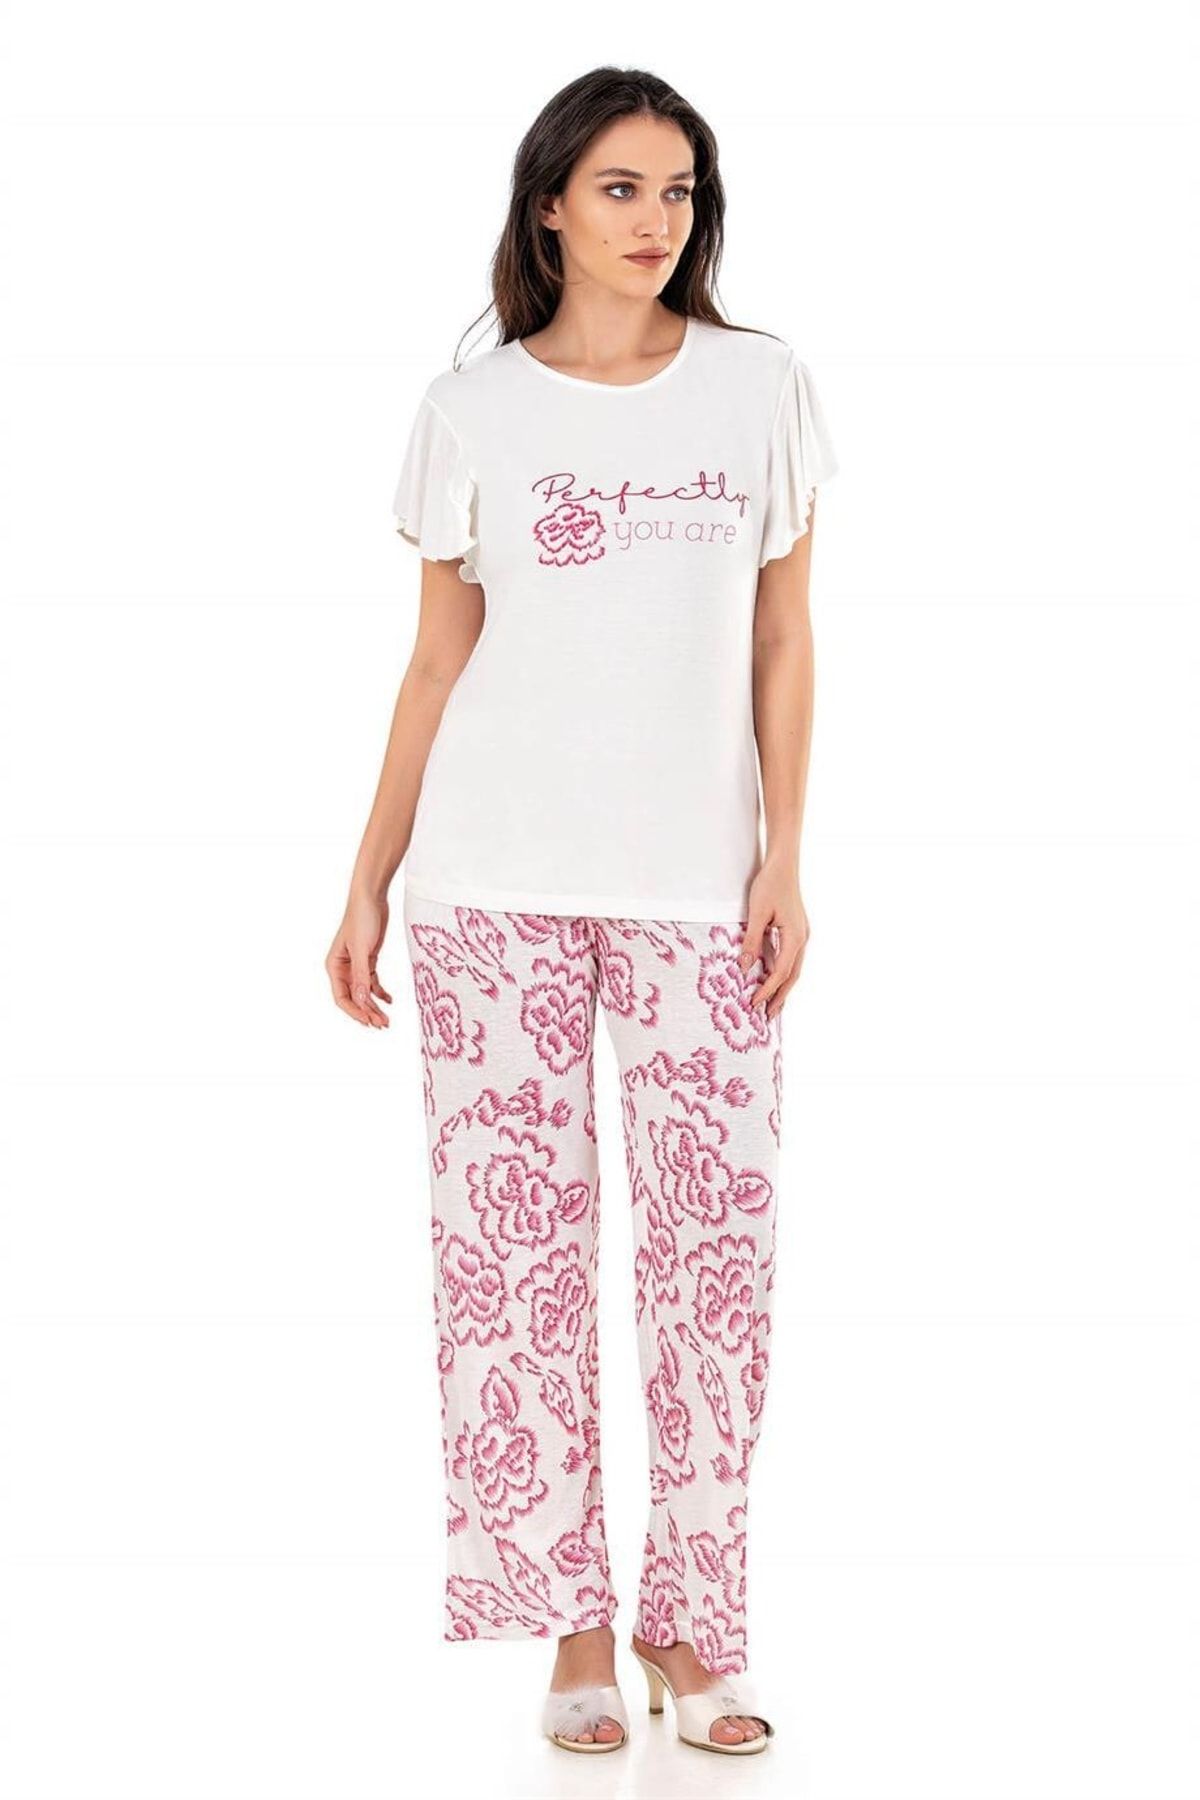 Flz Pijama Kadın Yazlık Moda Pamuk Kısa Kol Perfectly Baskılı Pijama Takımı Homewear 88-42